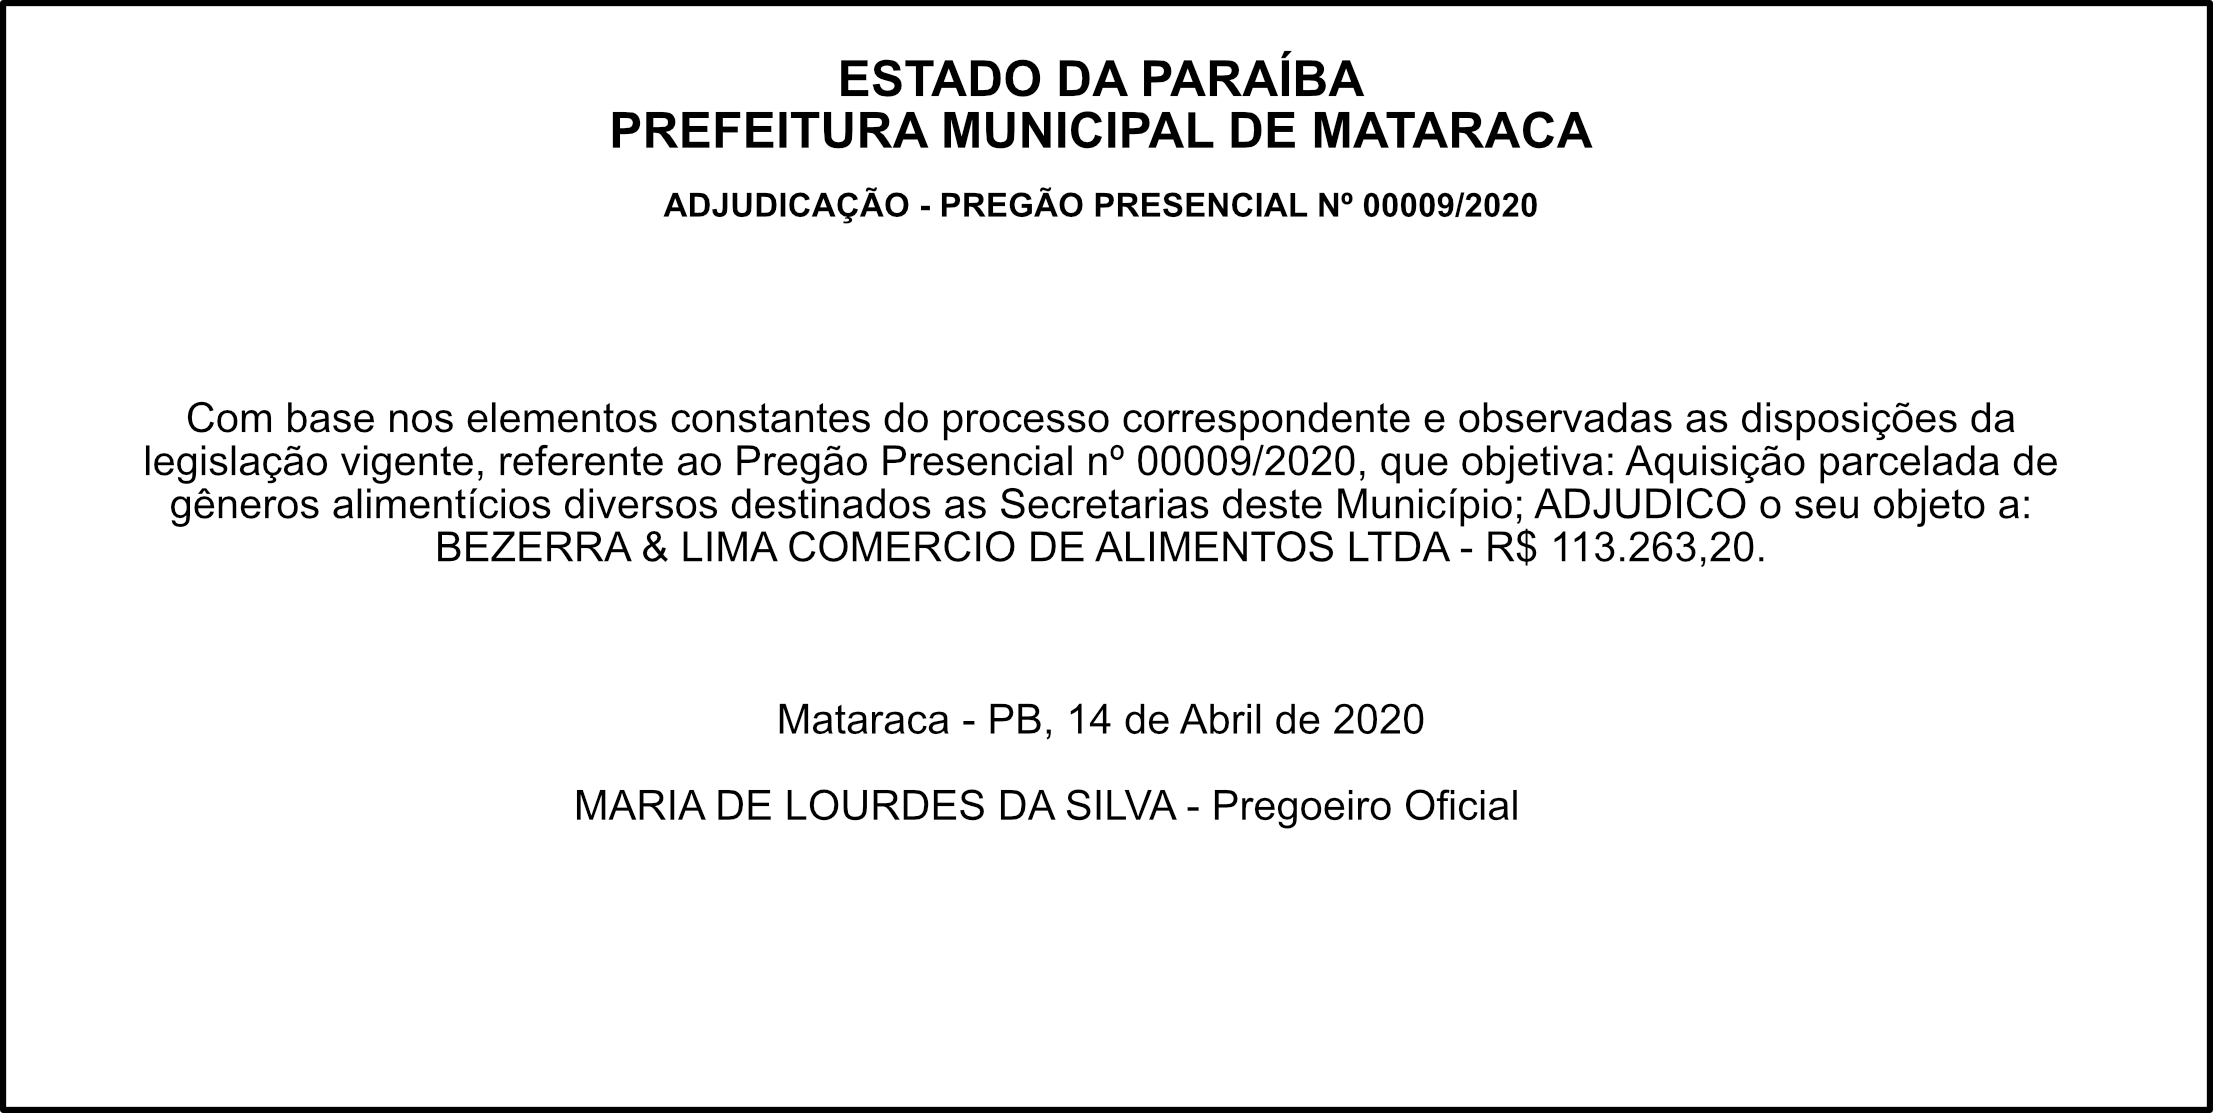 PREFEITURA DE MATARACA – ADJUDICAÇÃO PREGÃO PRESENCIAL Nº 00009/2020